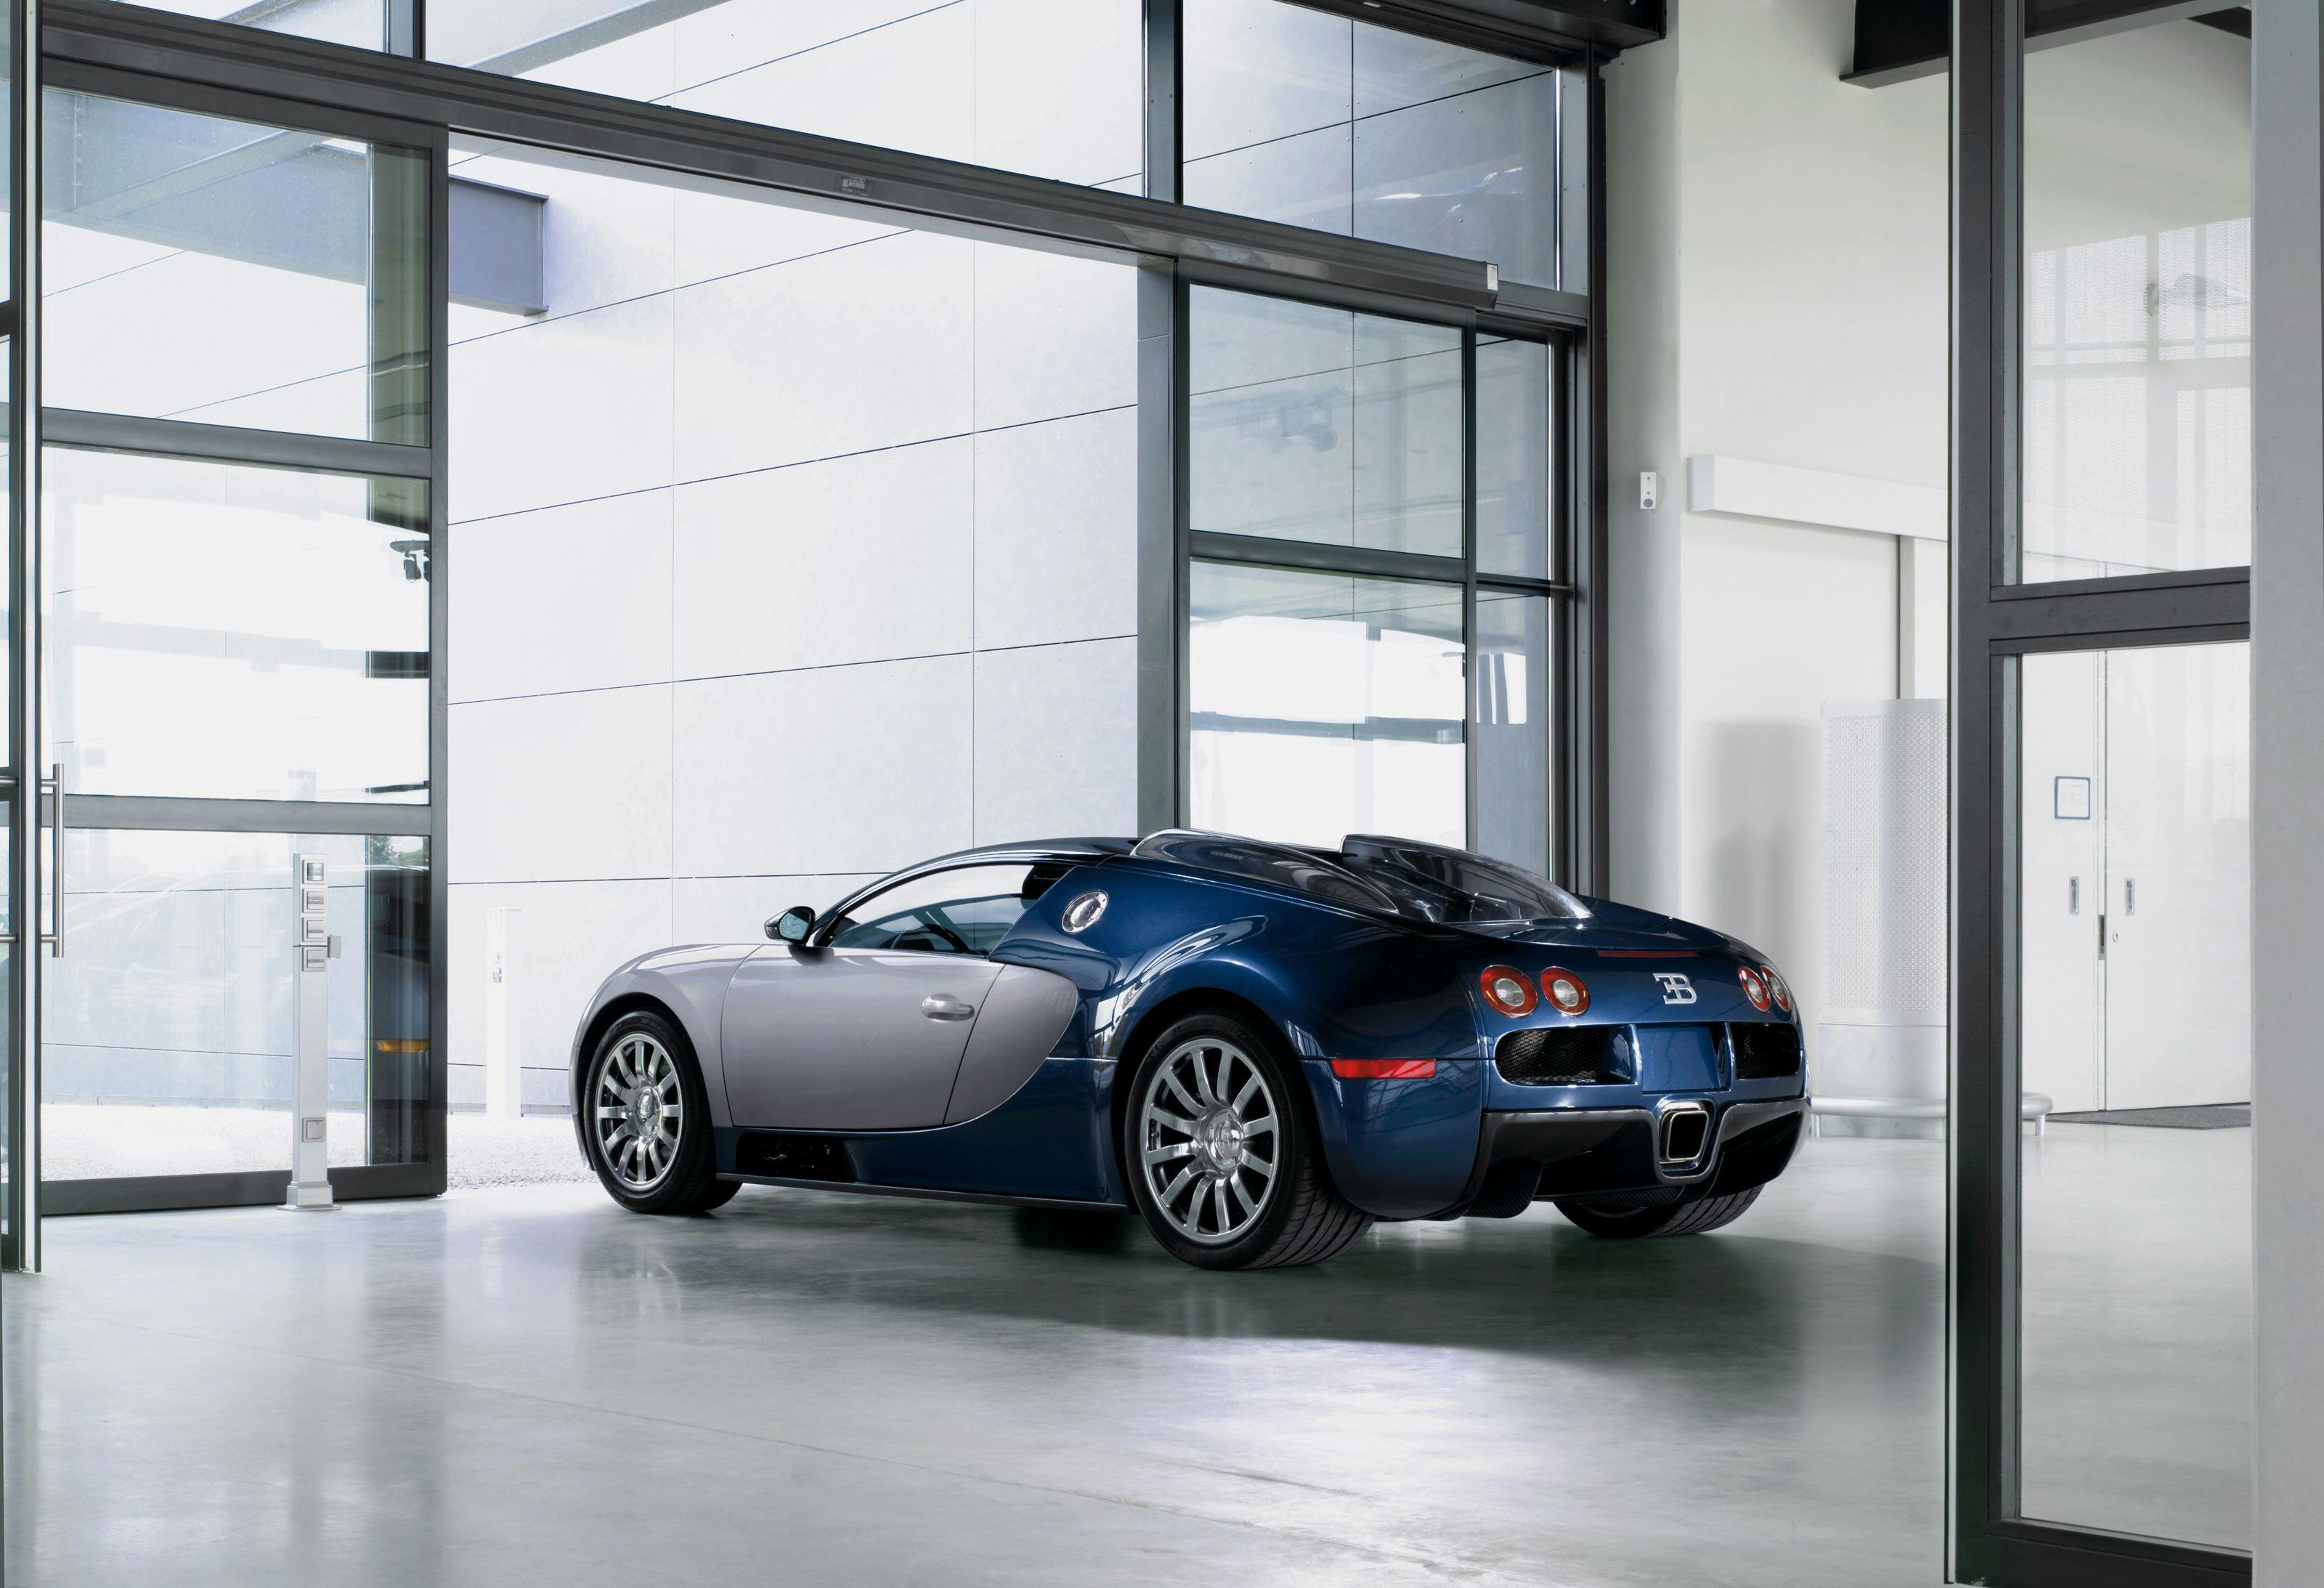 The Bugatti workshop in Molsheim opens